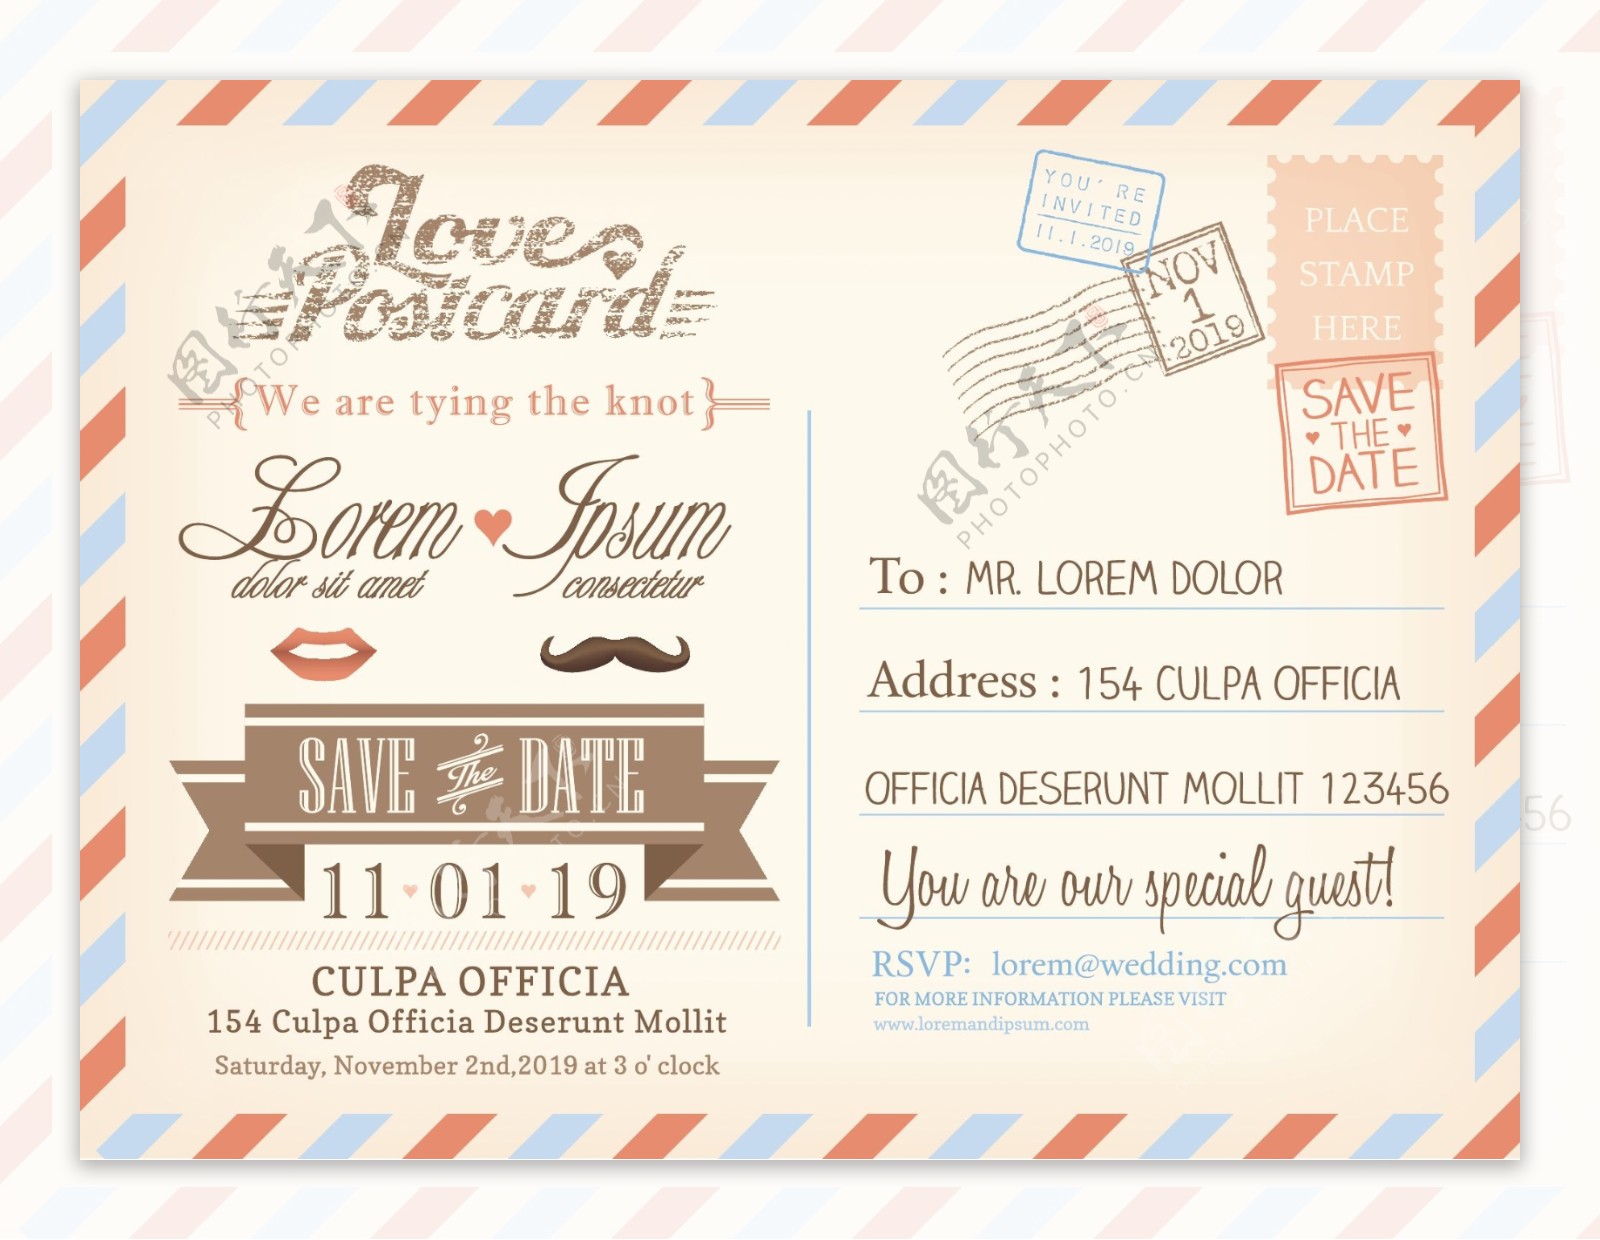 复古标签邮标婚礼信件模板下载